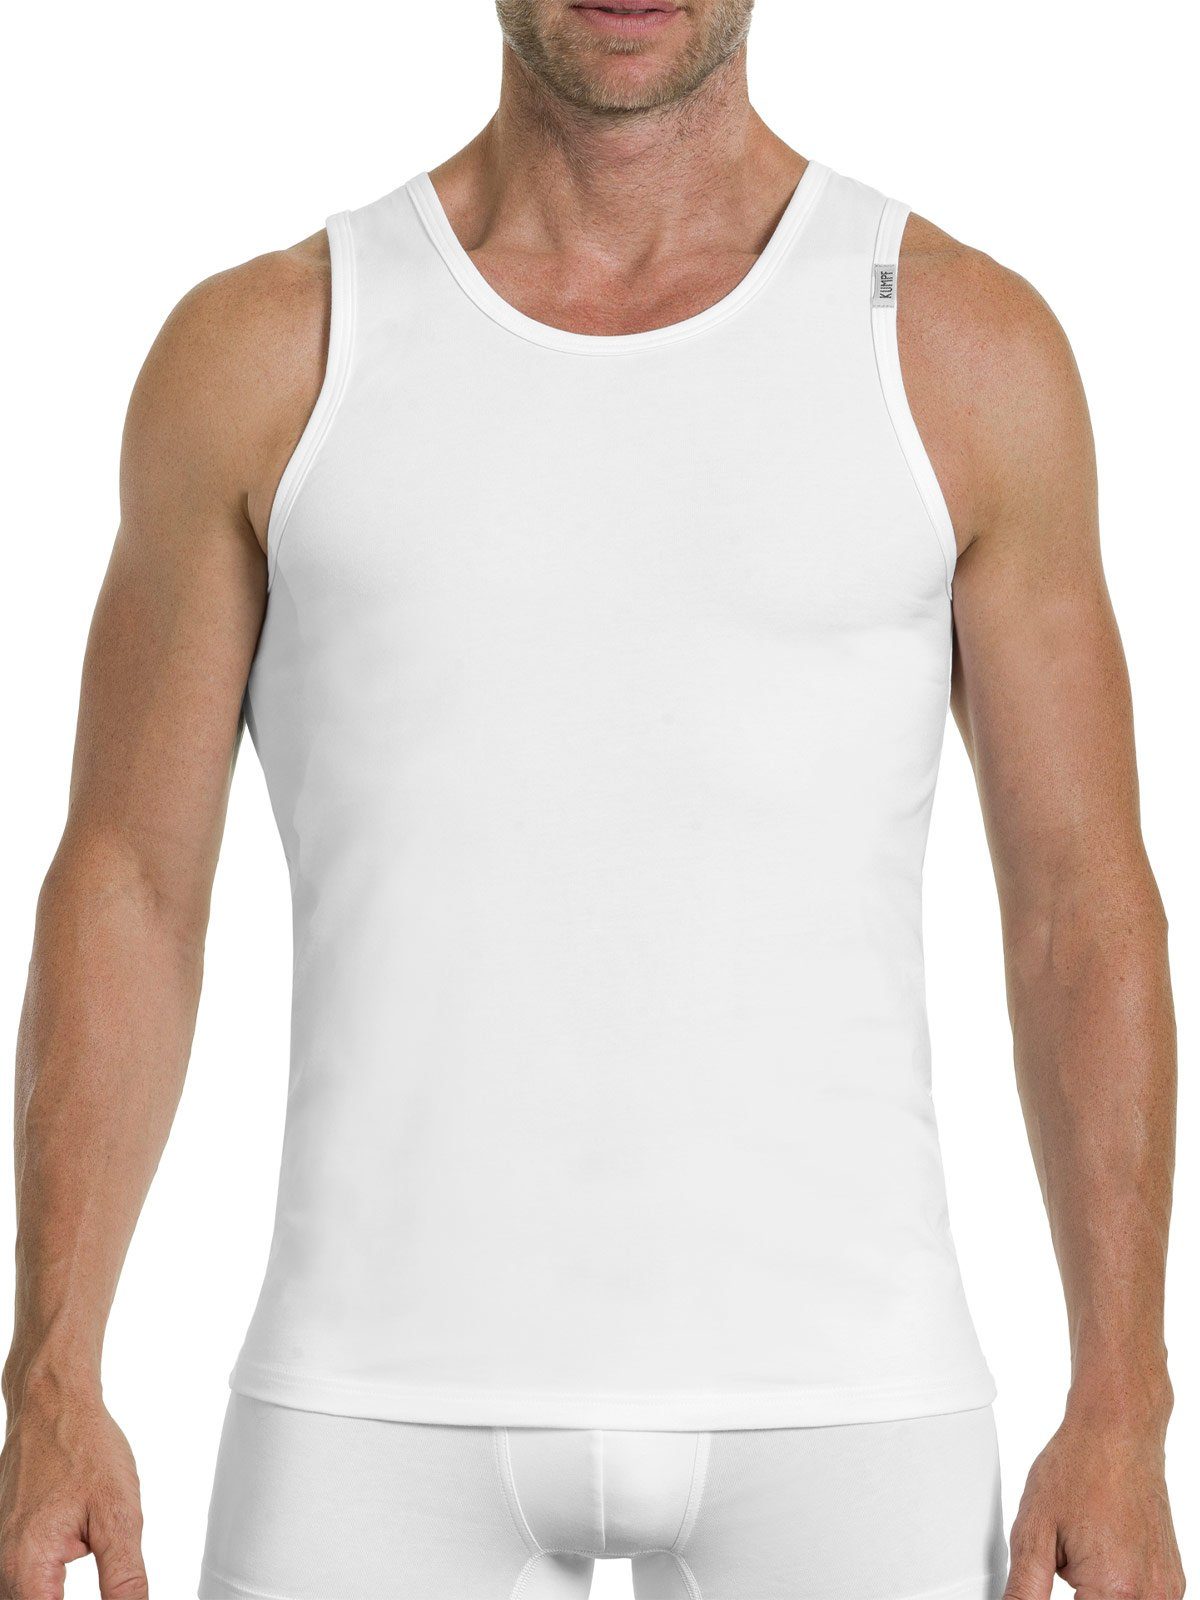 KUMPF Achselhemd 2er Sparpack Herren Cotton (Spar-Set, 2-St) Unterhemd weiss Bio hohe Markenqualität